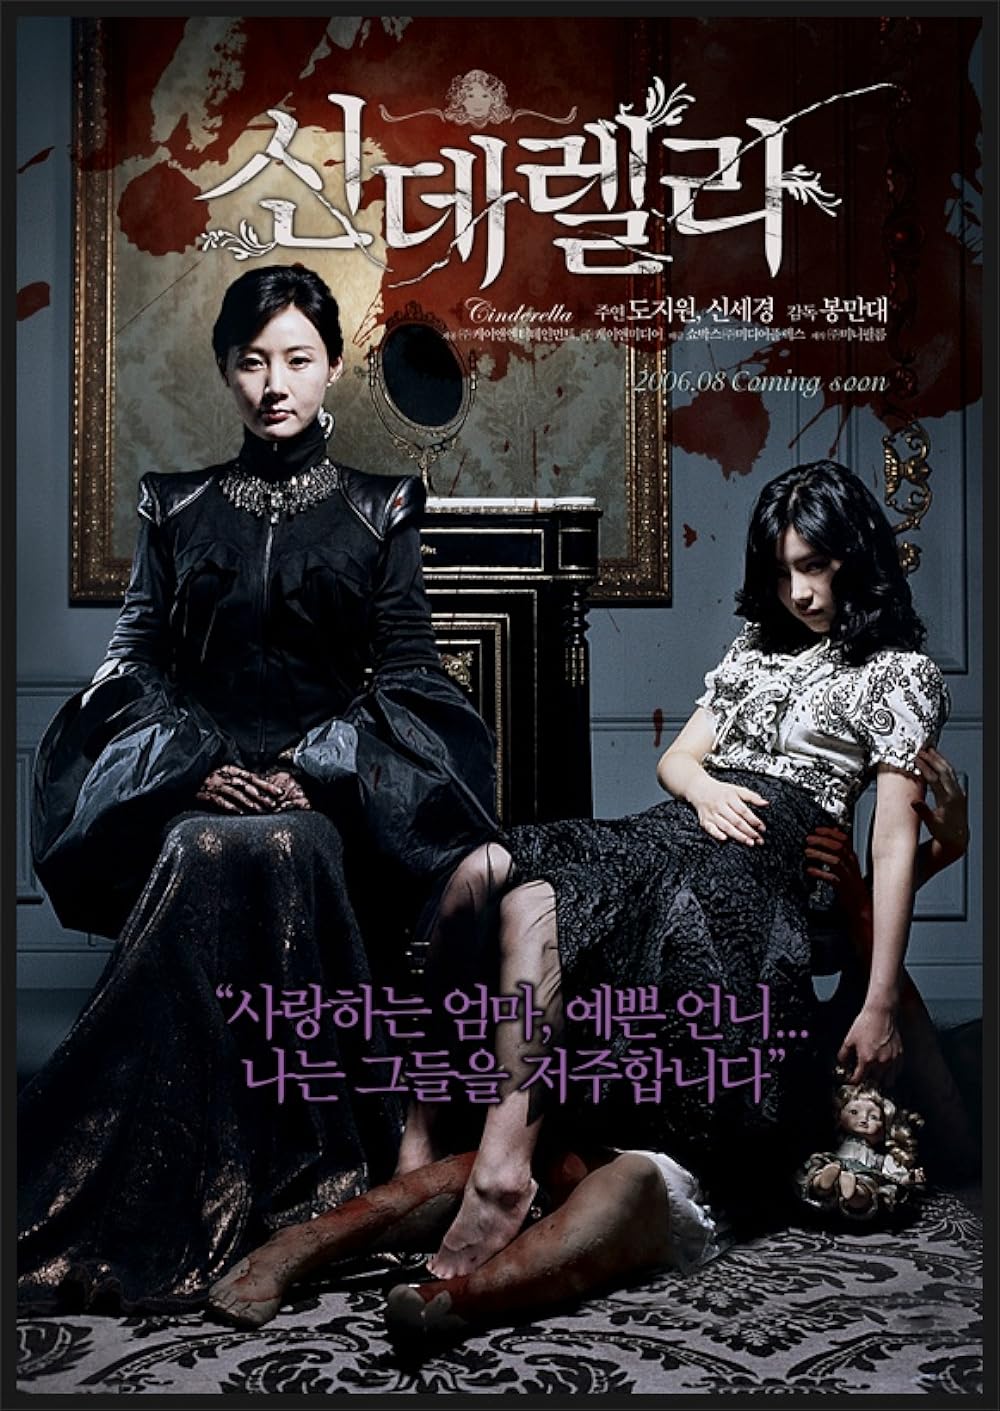 Top phim kinh dị Hàn Quốc: Gương mặt giả - Cinderella (2006)